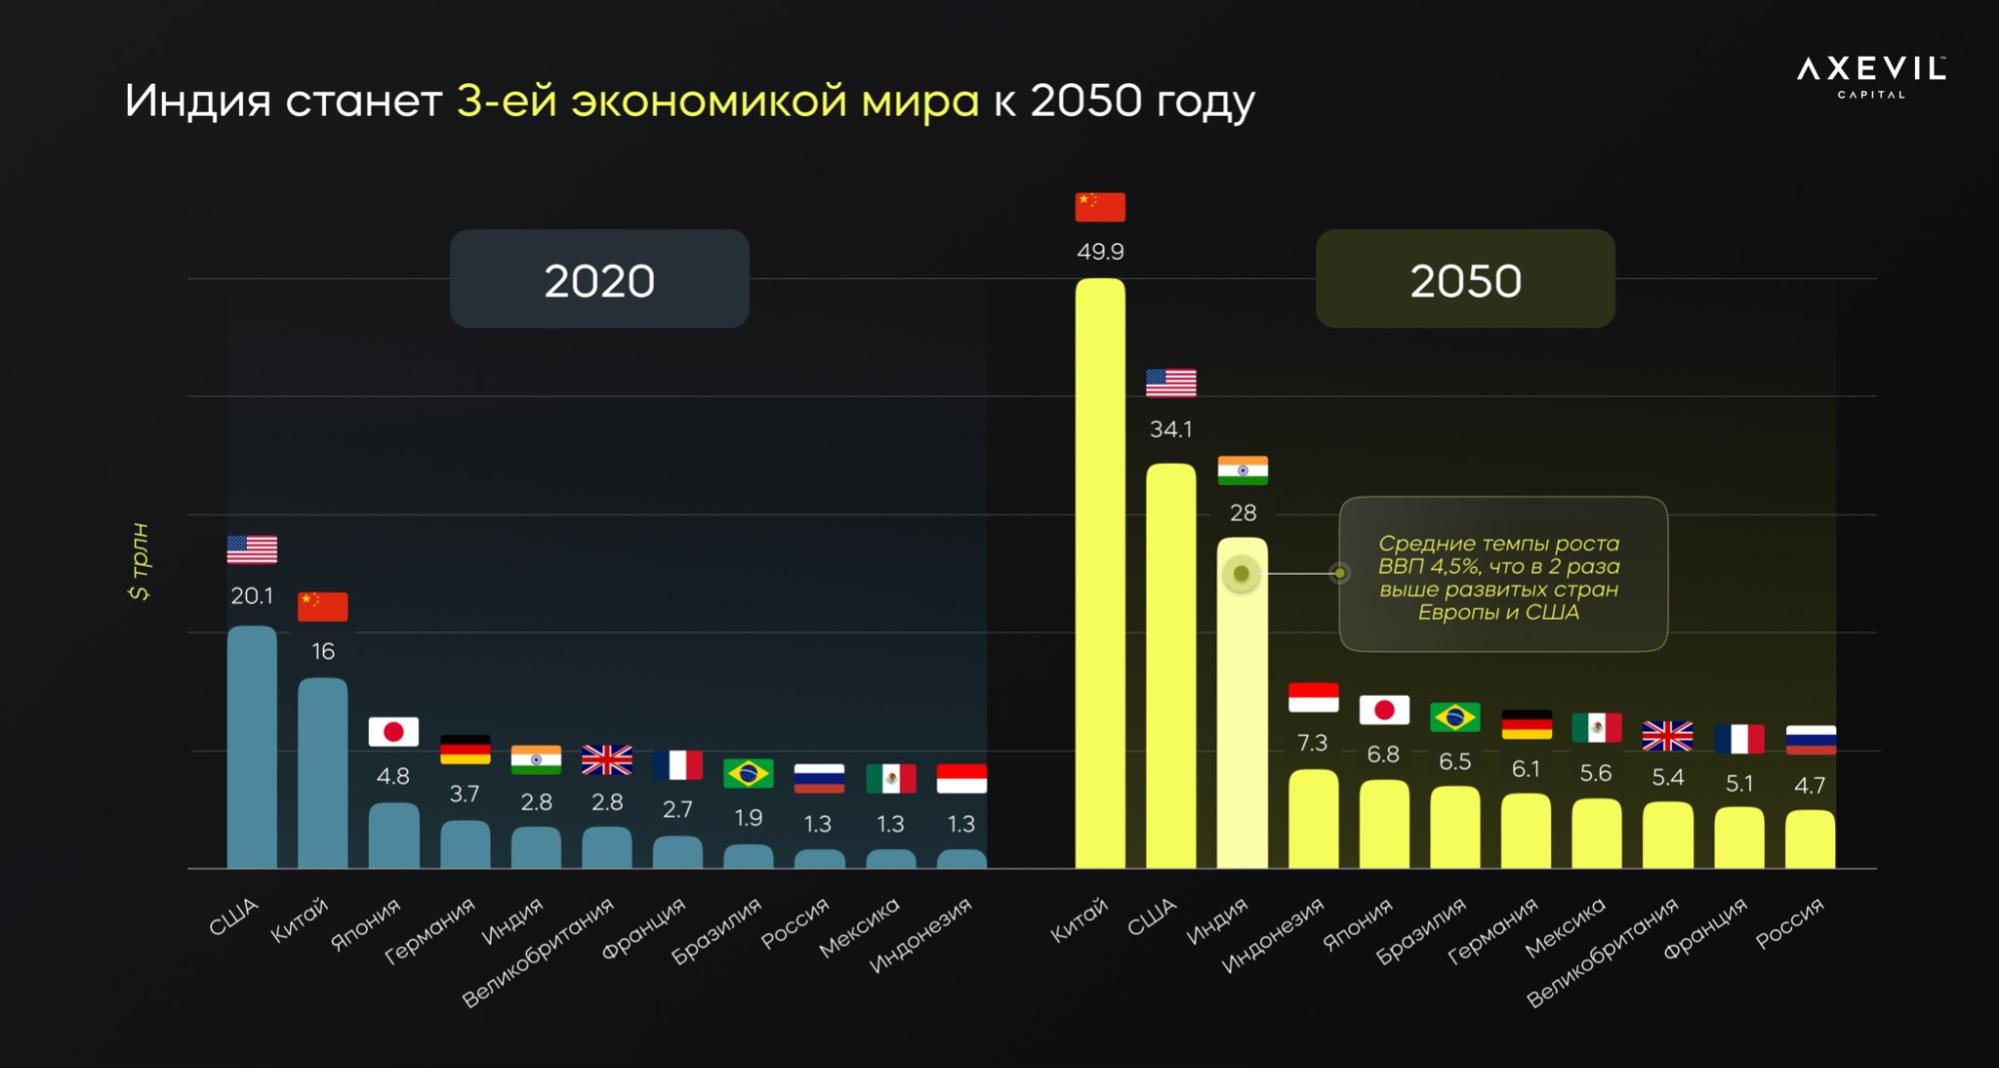 Индия ввп место. Топ стран ВВП К 2050 году.